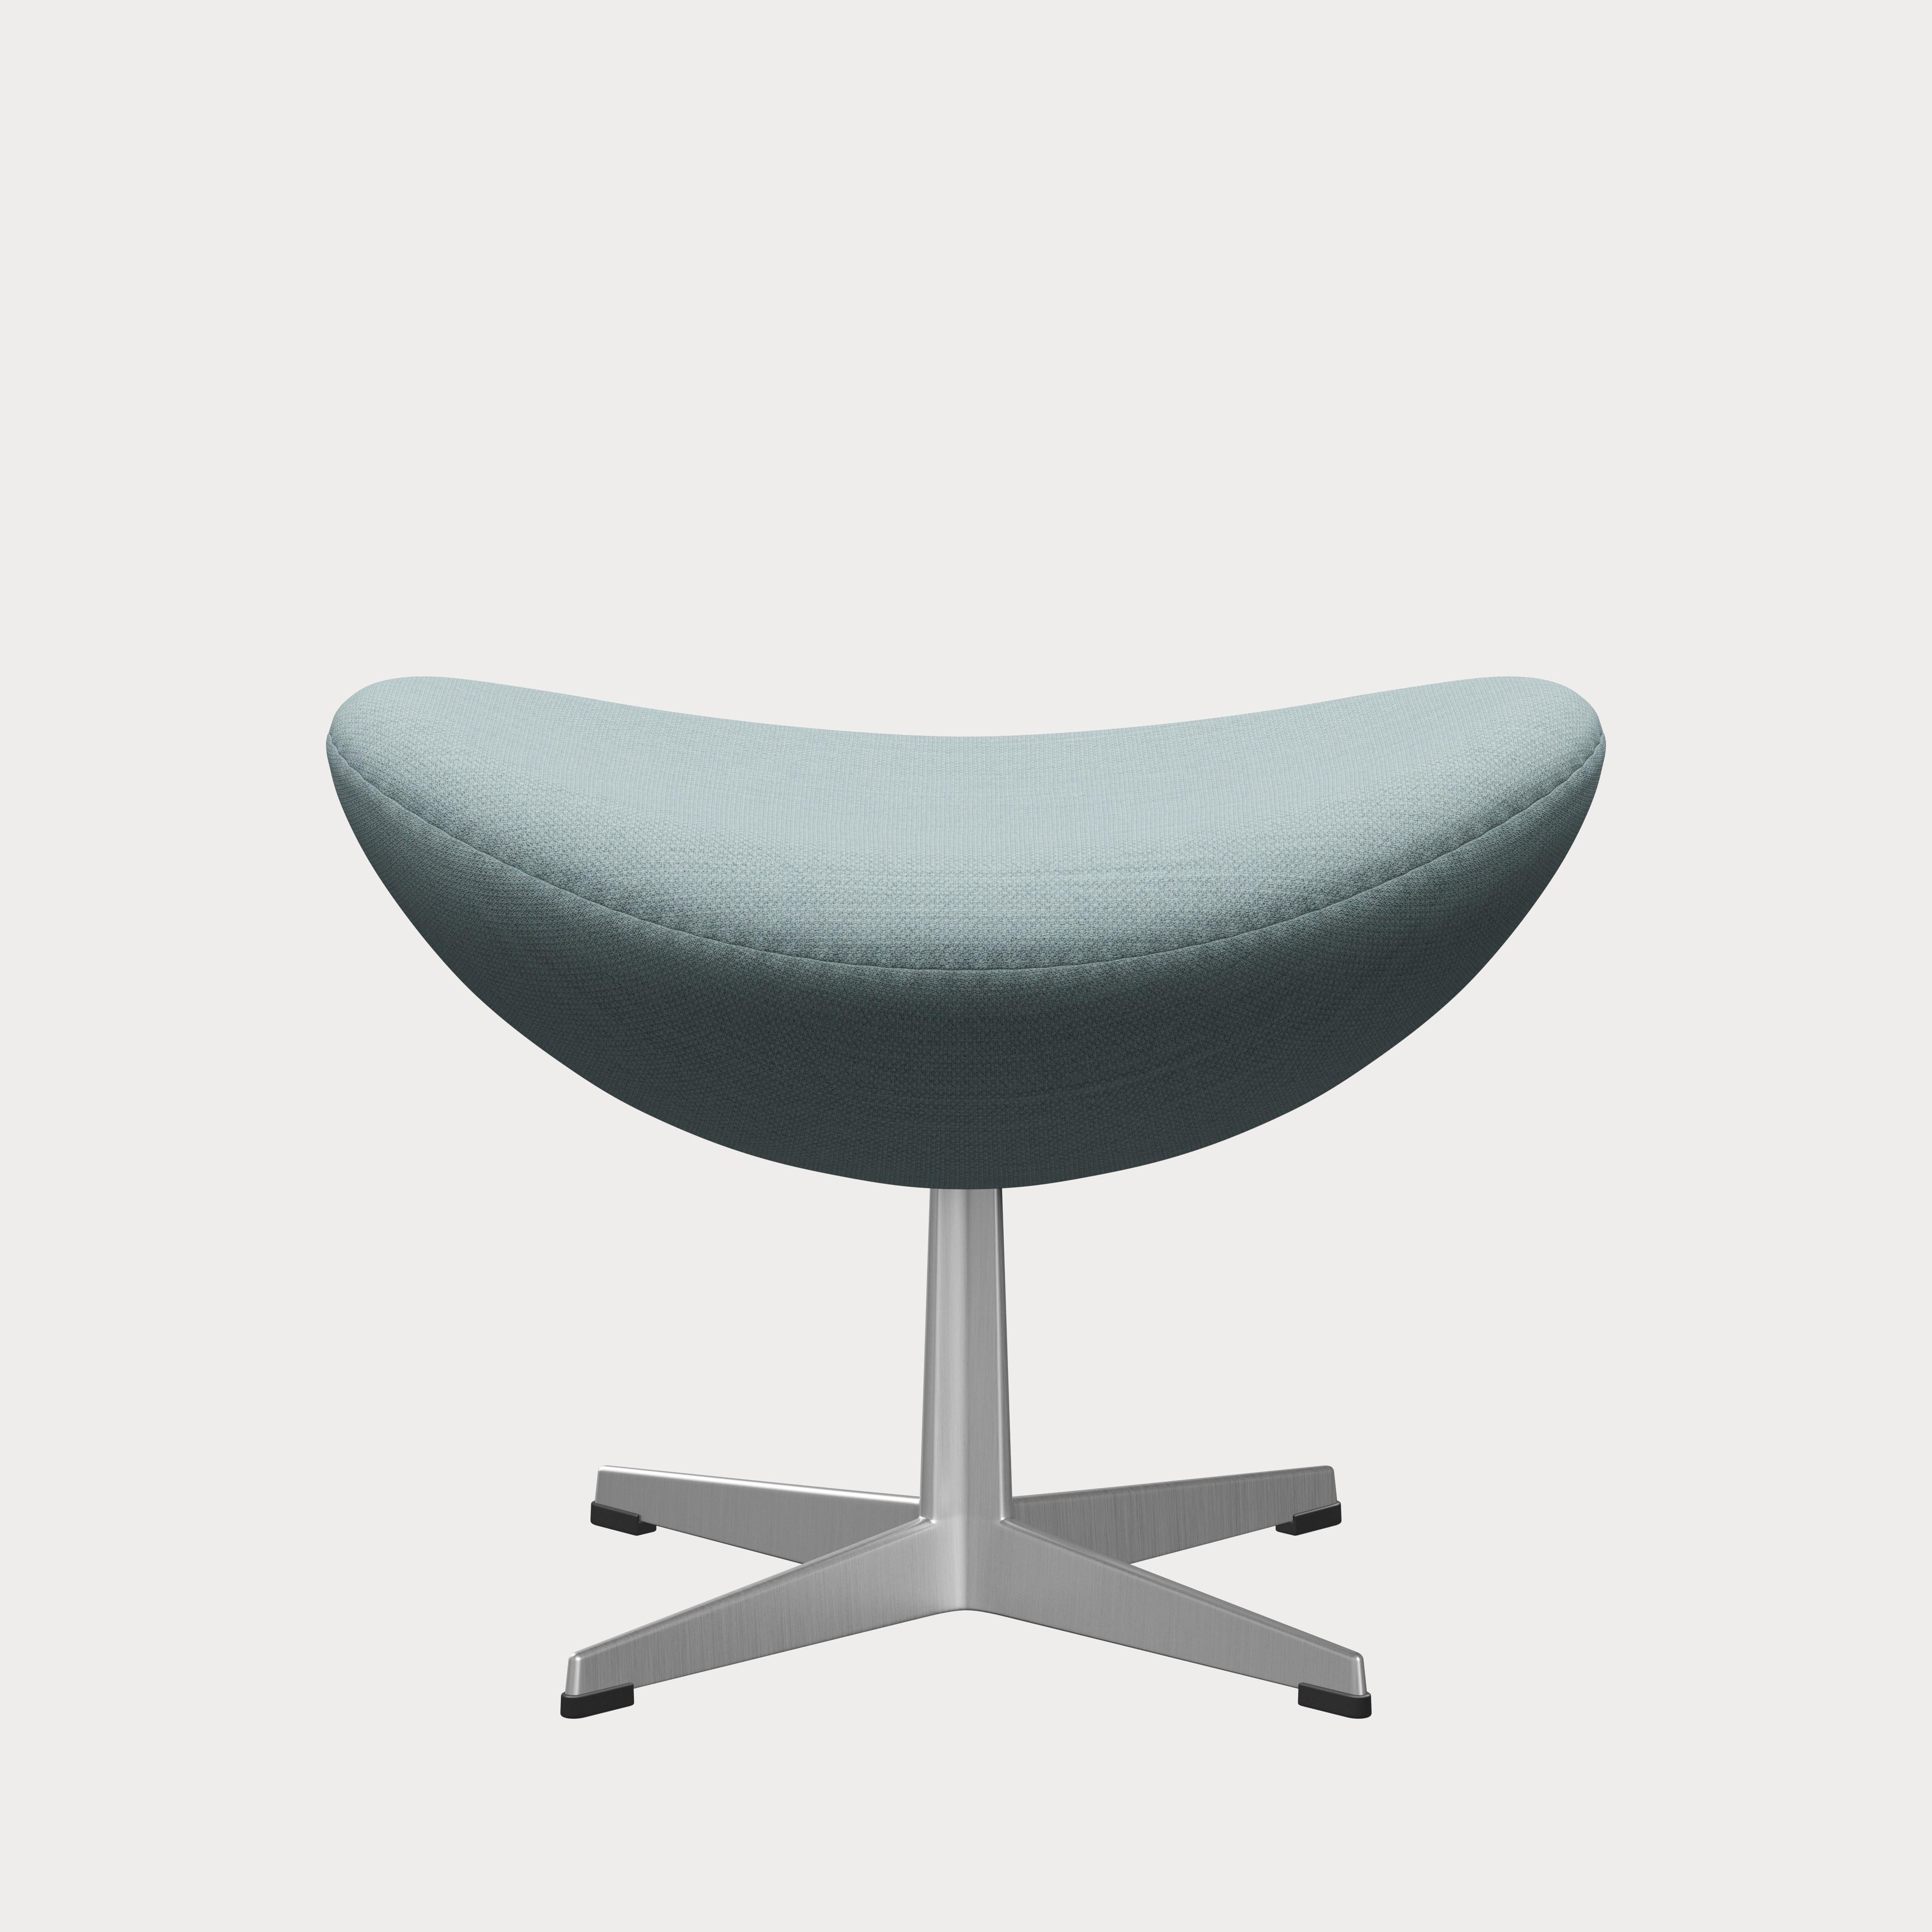 Metal Arne Jacobsen 'Egg' Footstool for Fritz Hansen in Fabric Upholstery (Cat. 2) For Sale